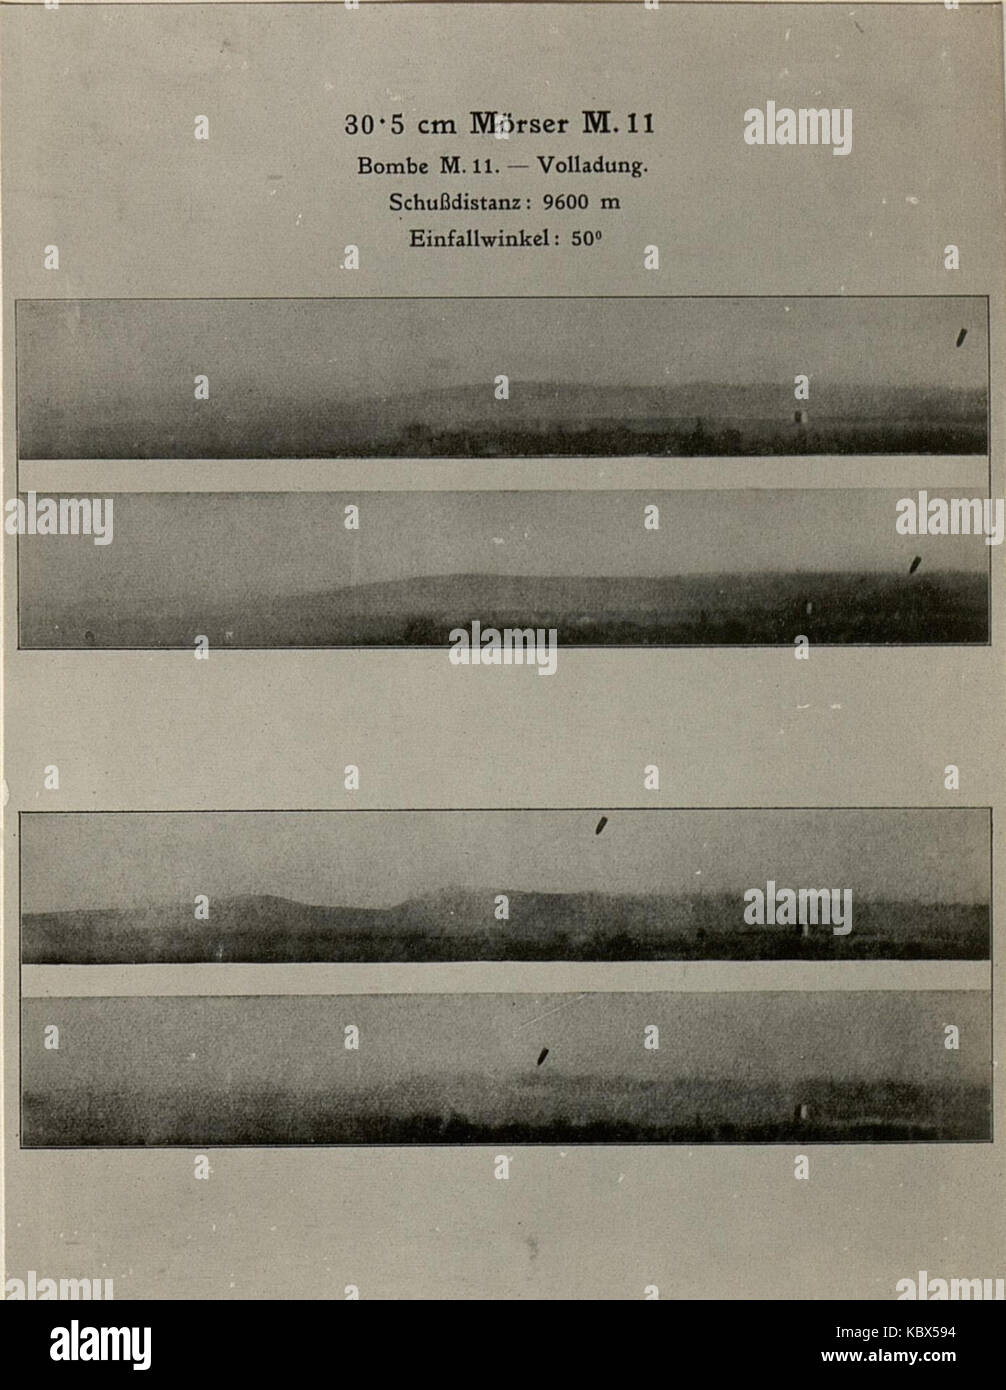 Kinematographische Aufnahme einer 30.5 cm Granate im Fluge zum Beweise der richtigen Stellung der Geschossachse zur Flugbahn. Aufgenommen am 27.3.1916. (BildID 15470195) Stock Photo